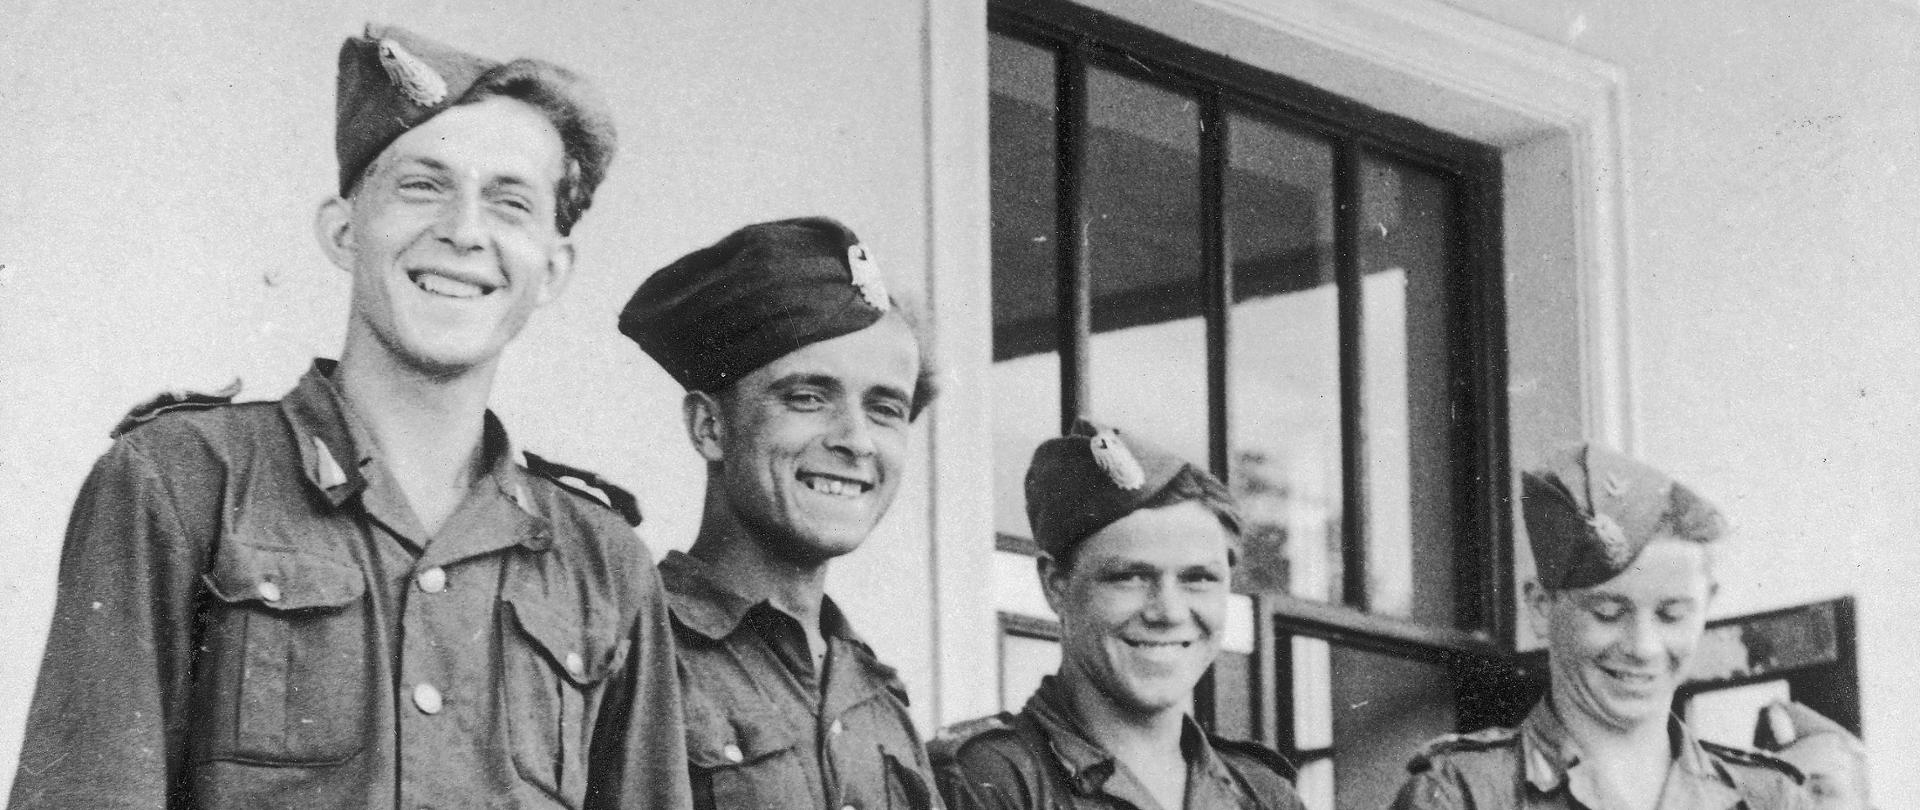 Czterech młodych mężczyzn w mundurach junackich, na głowach mają zawadiacko ubrane furażerki (czapki wojskowe). Mężczyźni trzymają w dłoniach dyplomy, uśmiechają się.
